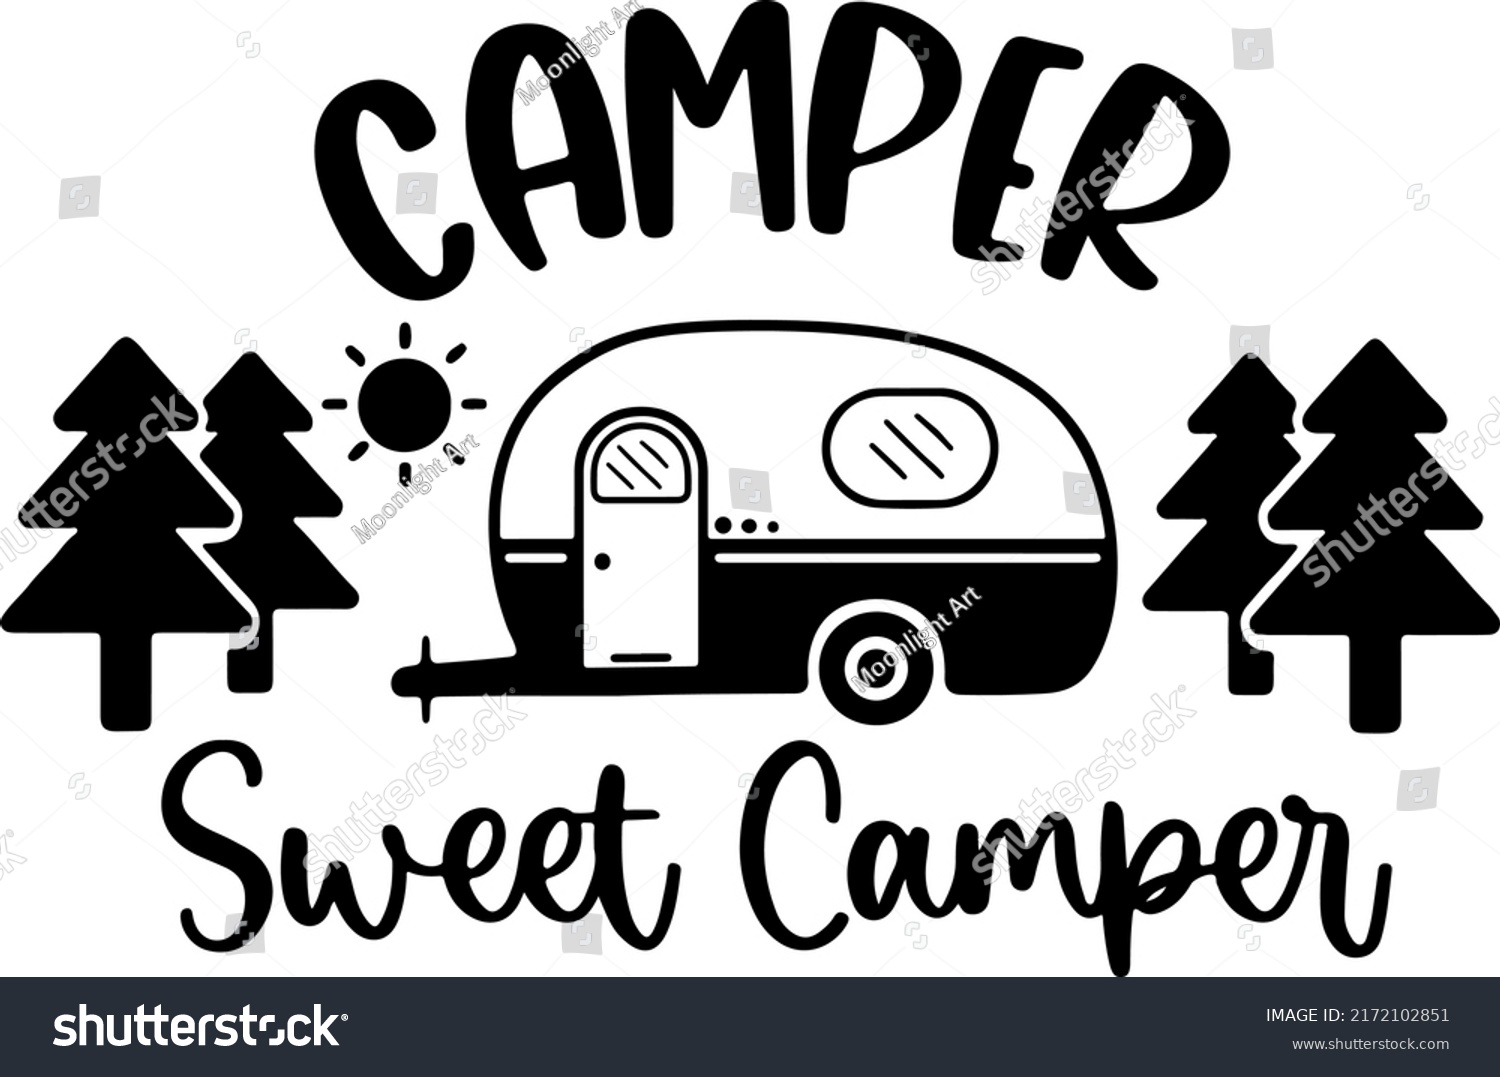 SVG of Camper Sweet Camper SVG, Camping Svg, Camping Sign, Camping Bucket, Camping Quotes, Camper Sign, RV Svg svg